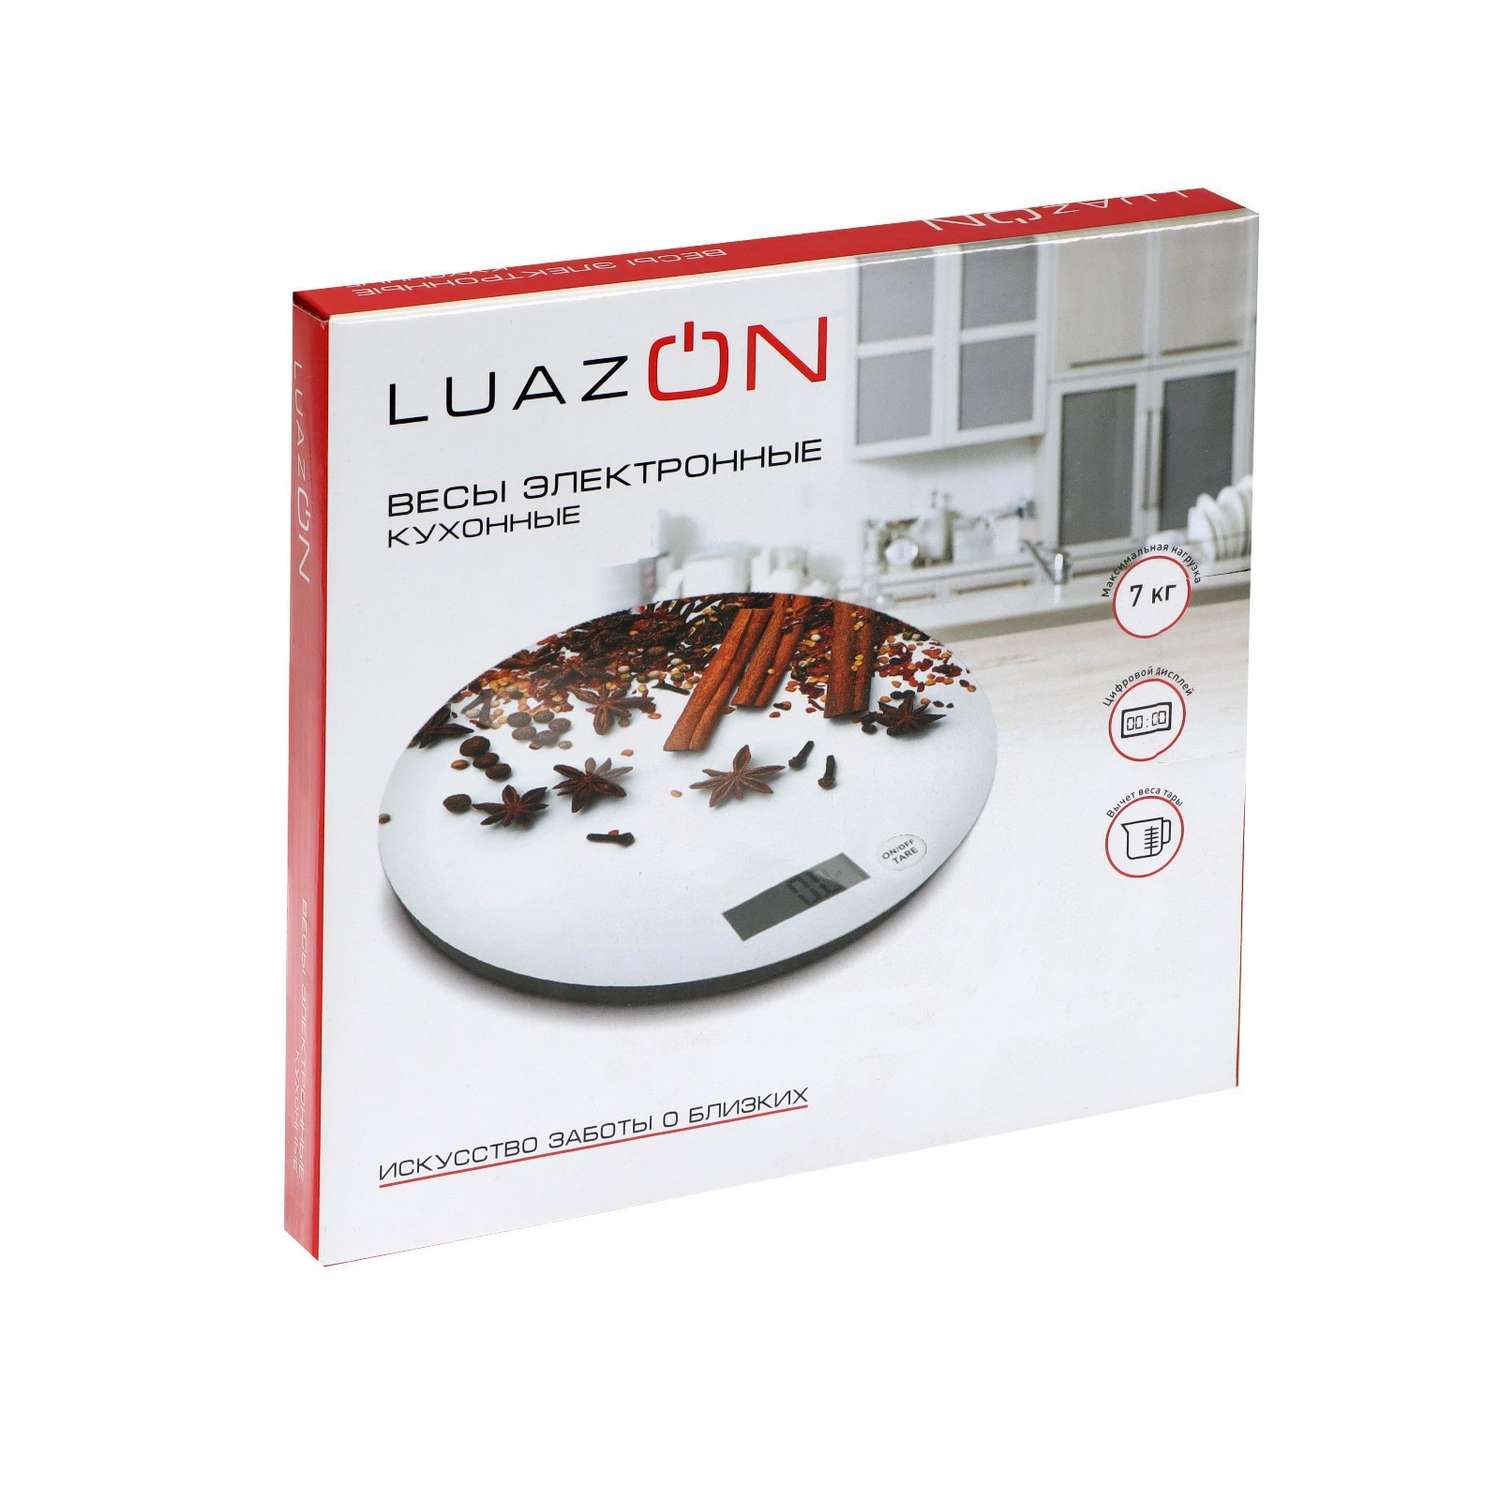 Весы кухонные Luazon Home LVK-701 «Корица» электронные до 7 кг - фото 10